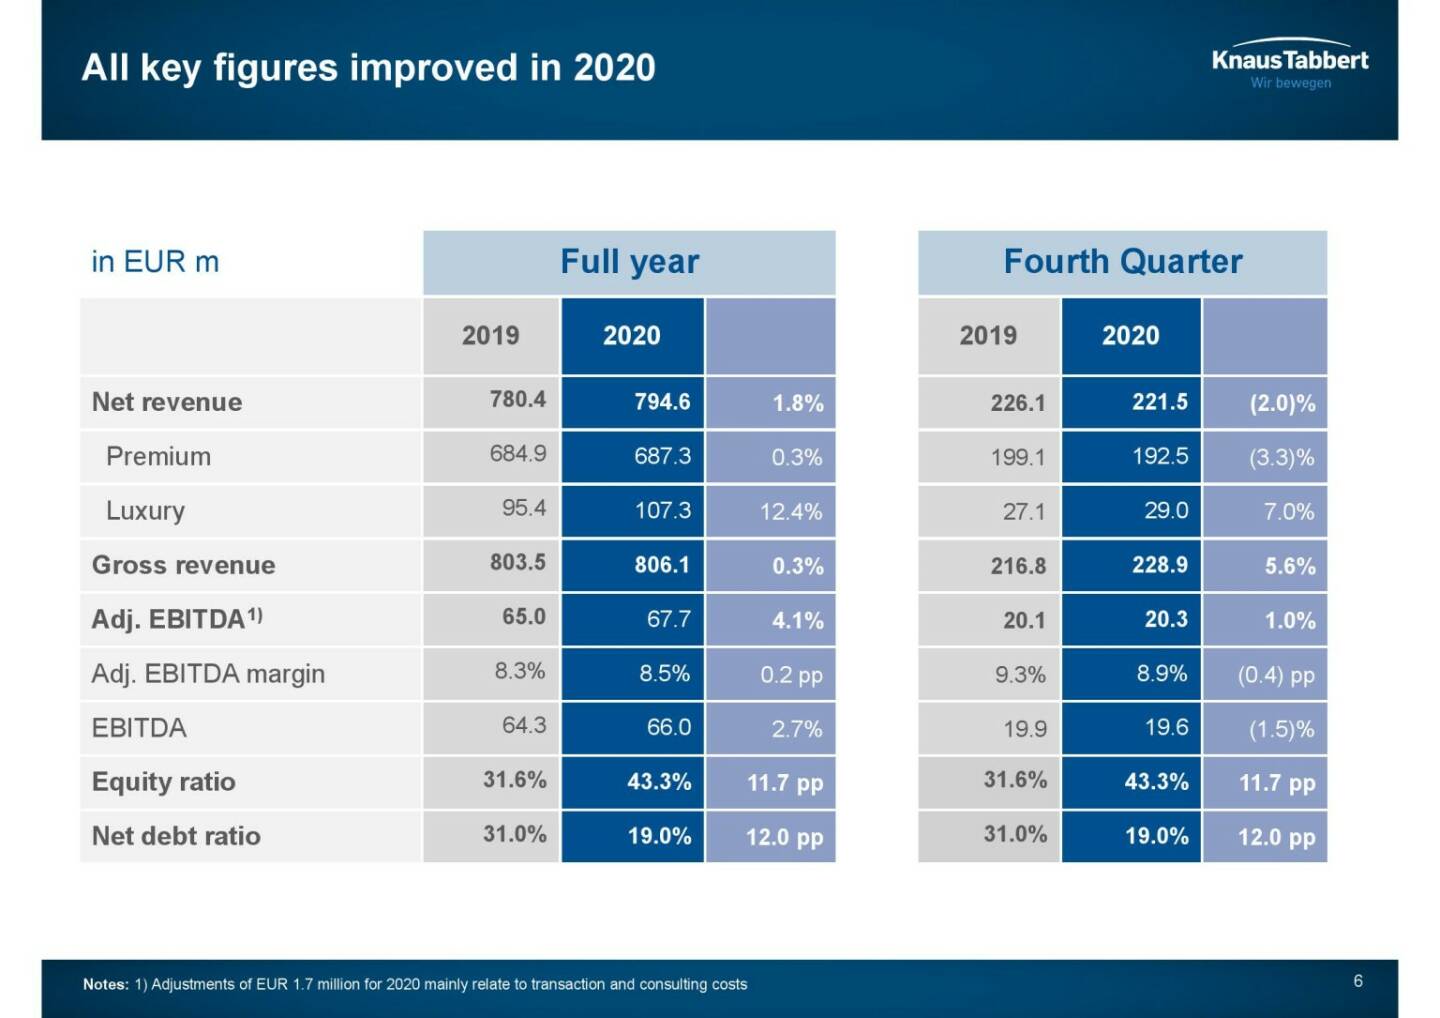 Knaus Tabbert - All key figures improved in 2020